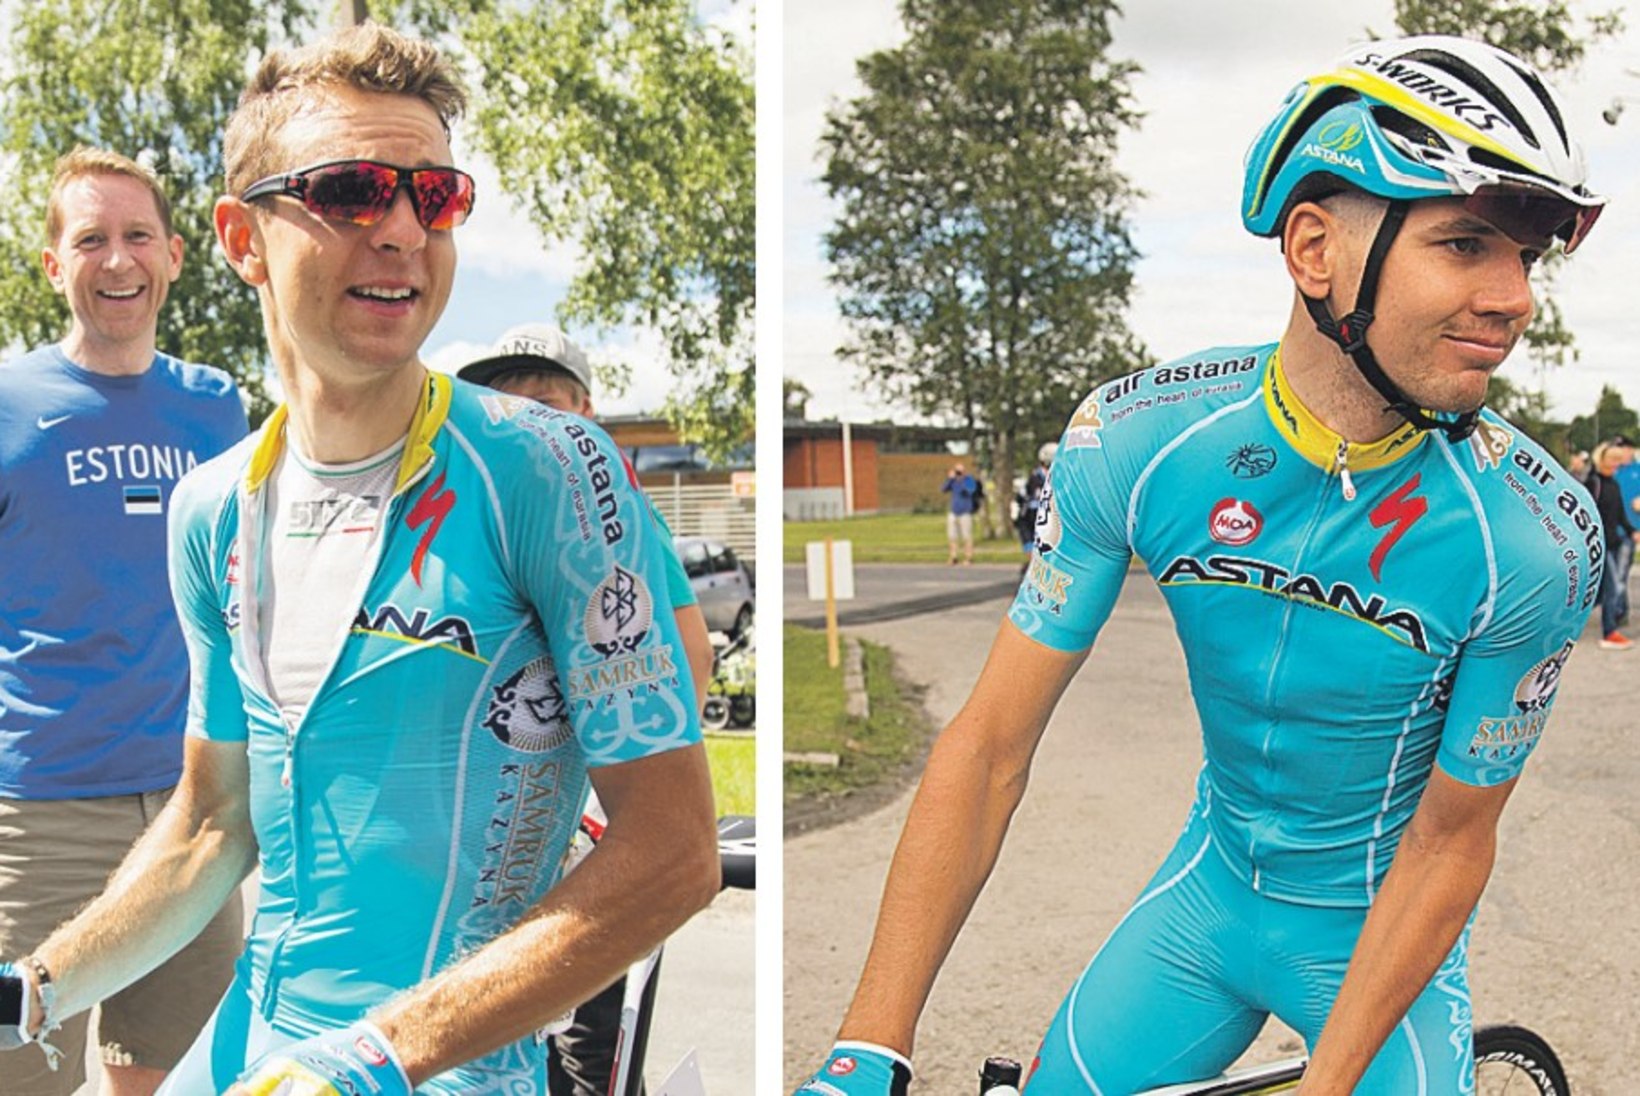 Vändra mehed Kangert ja Taaramäe ühise eesmärgi nimel Tour de France'ile